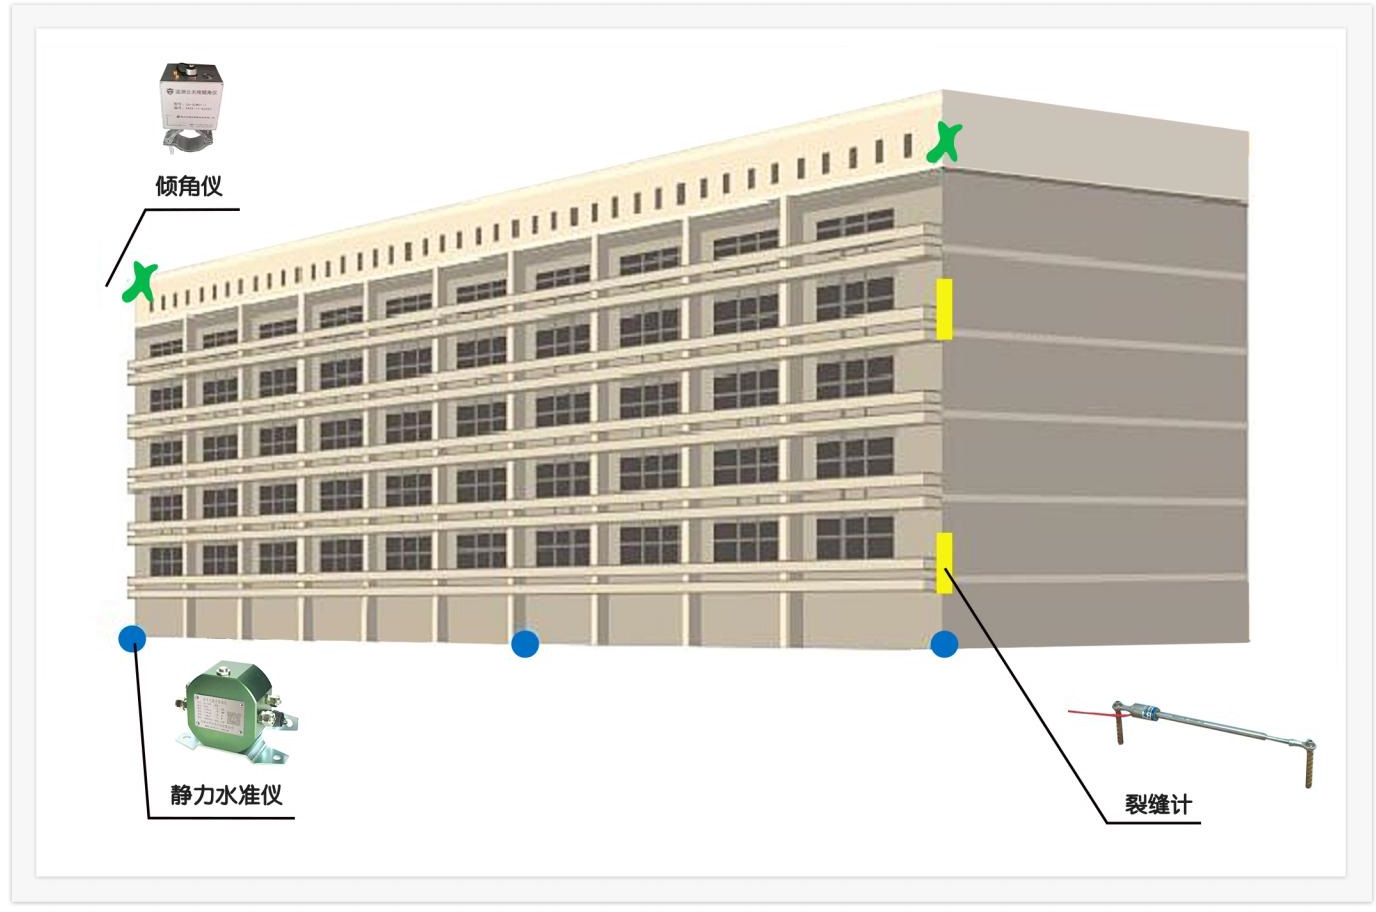 建筑物监测 建筑物自动化监测解决方案